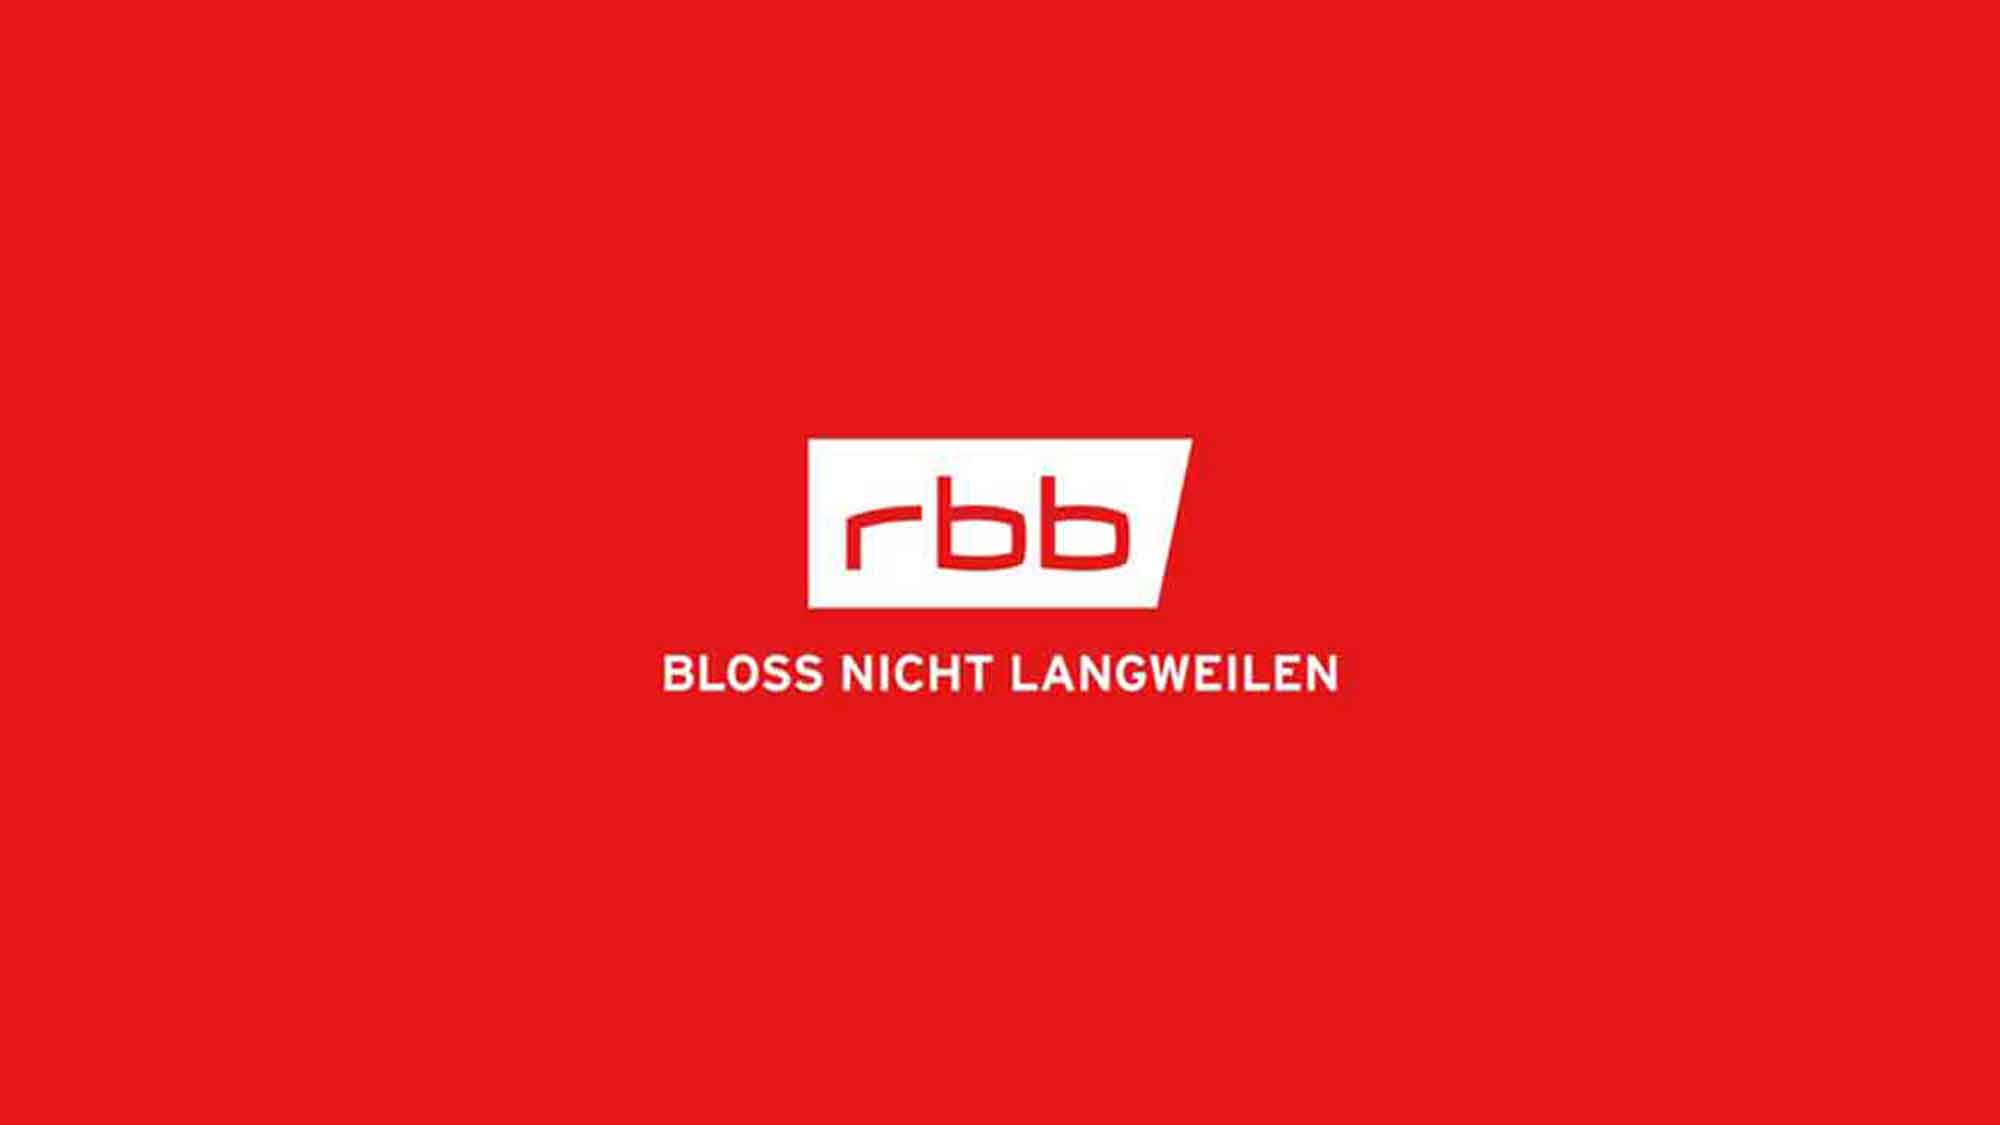 RBB 24 Recherche Exklusiv: Kupferschiefer Lausitz will weitere 50 Millionen Euro investieren